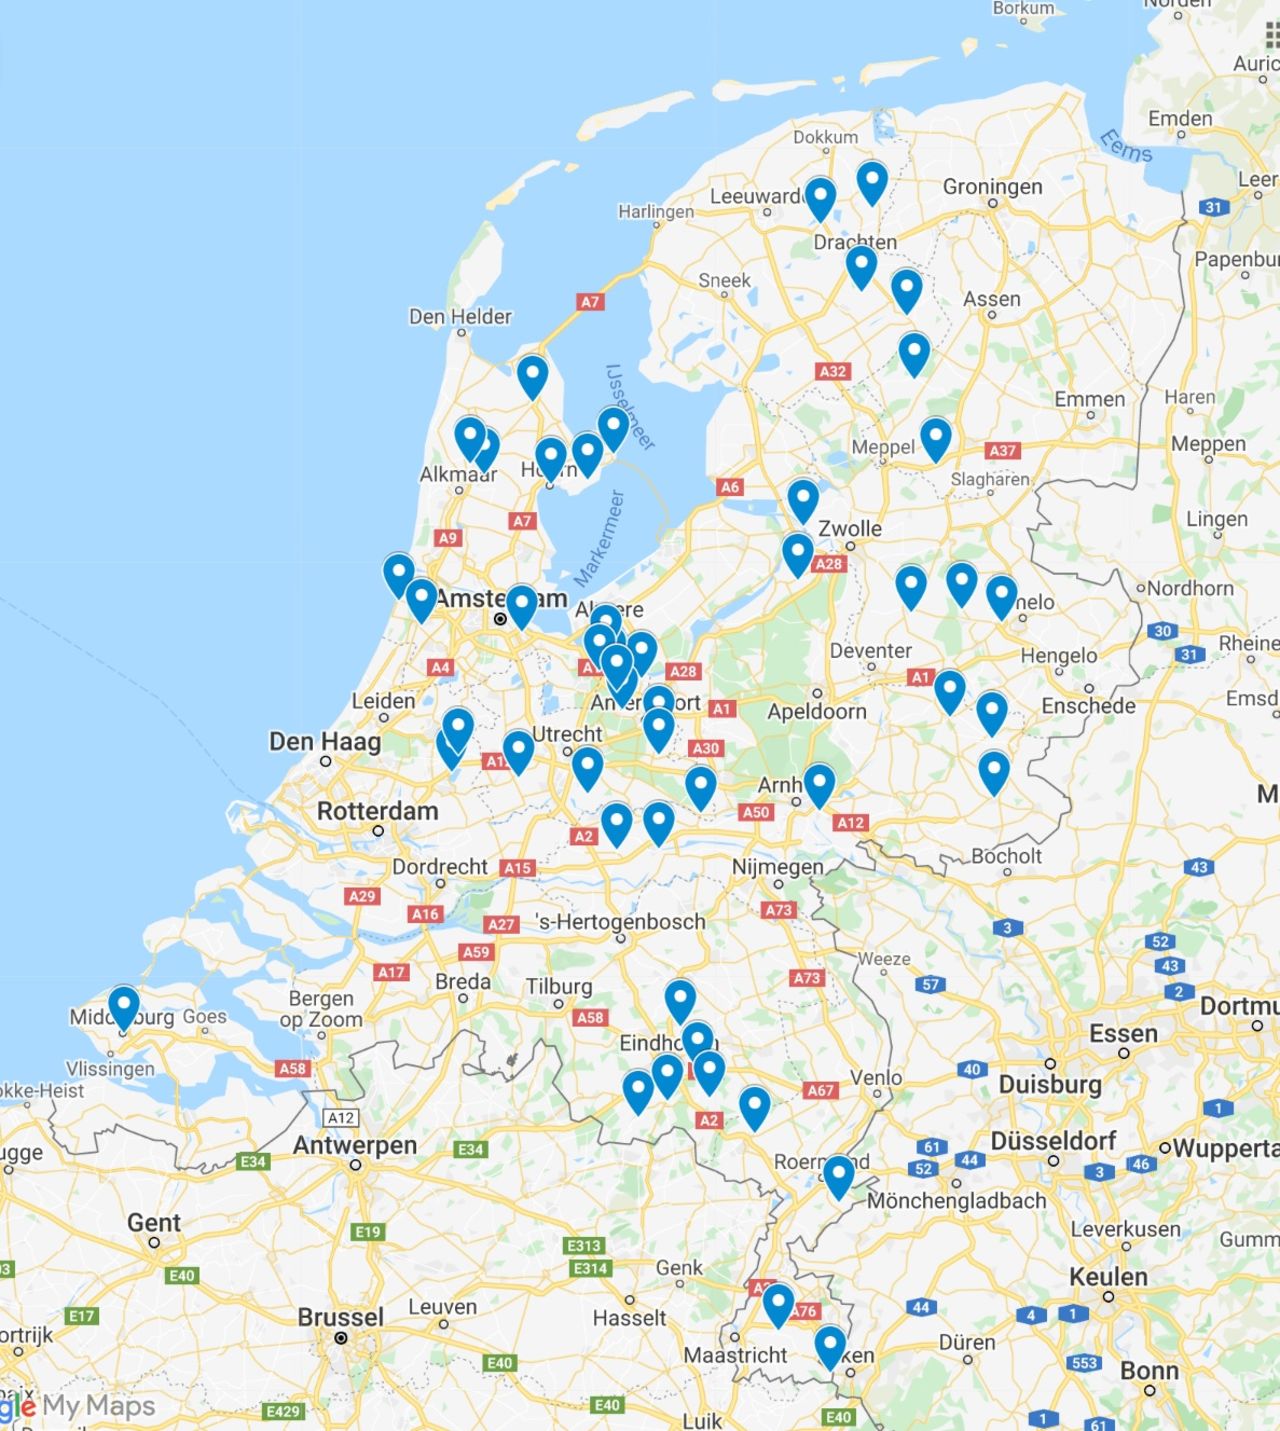 50 kleinere gemeenten, kriskras door Nederland, hebben zich aangesloten bij Jeugd aan Zet.